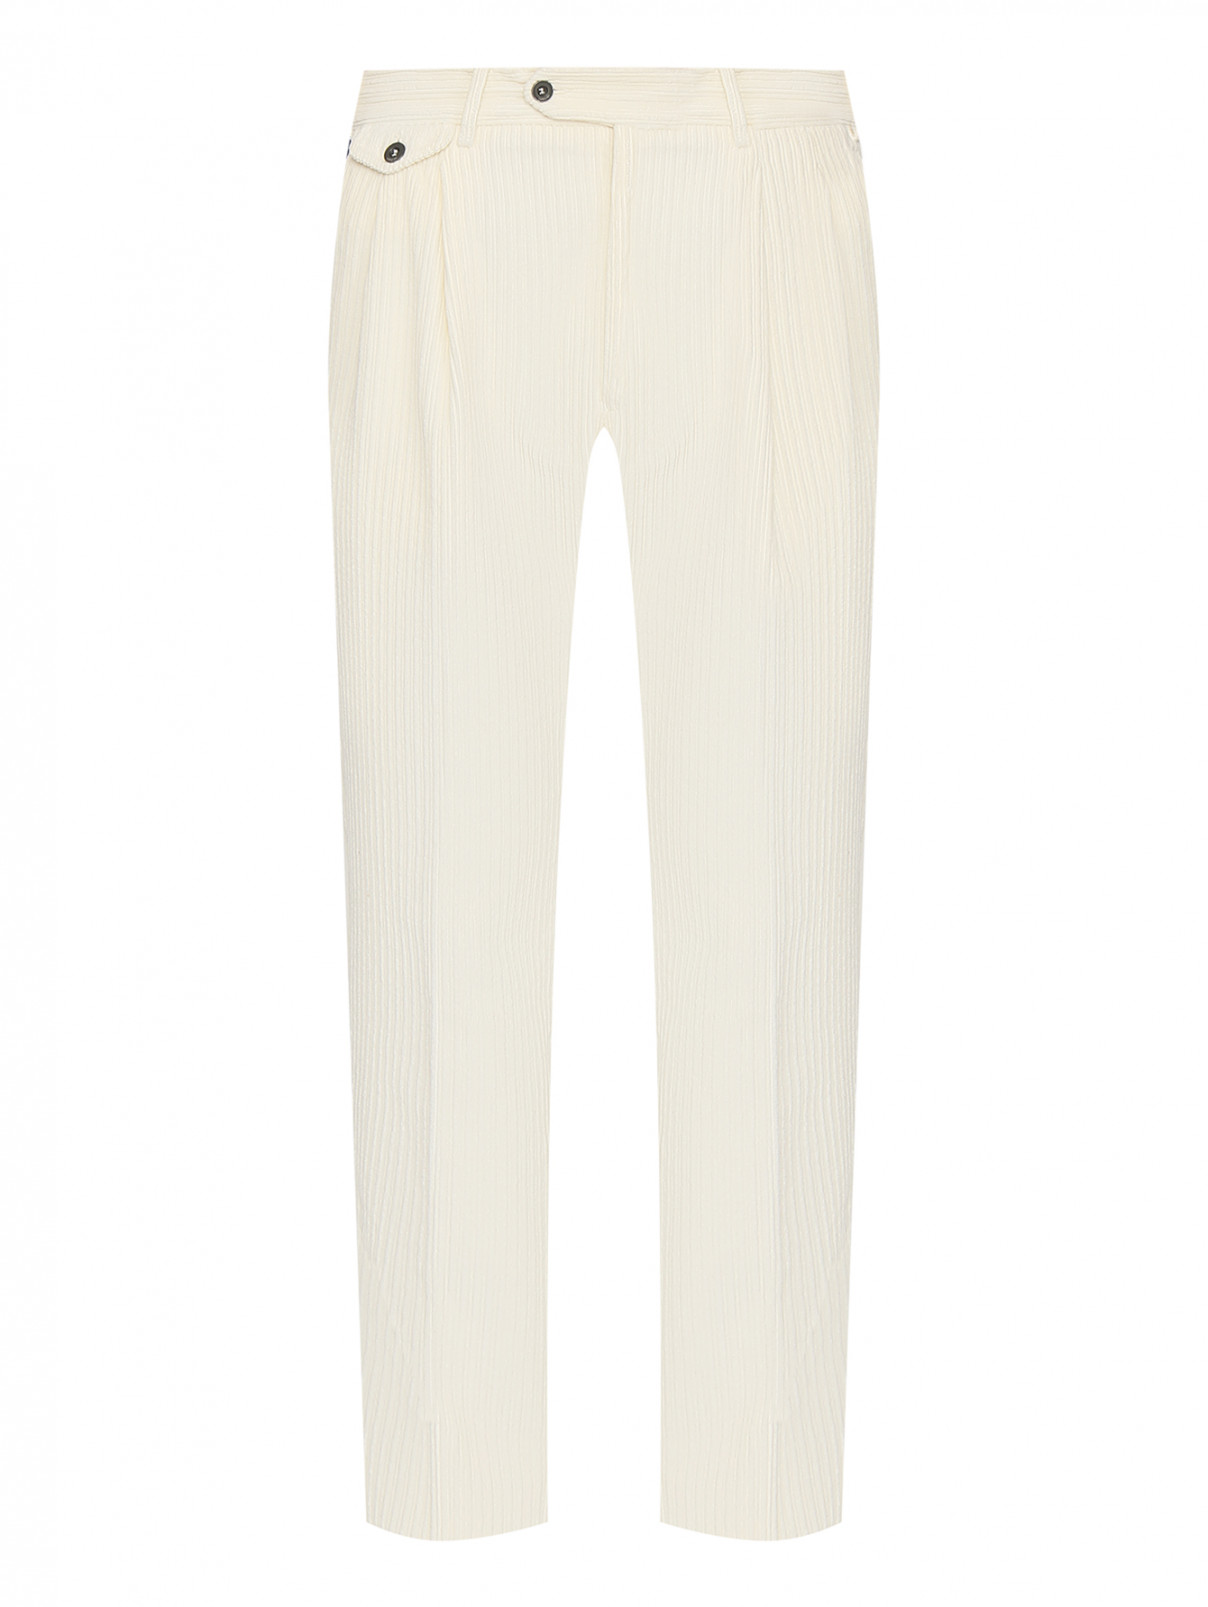 Вельветовые брюки со стрелками LARDINI  –  Общий вид  – Цвет:  Белый